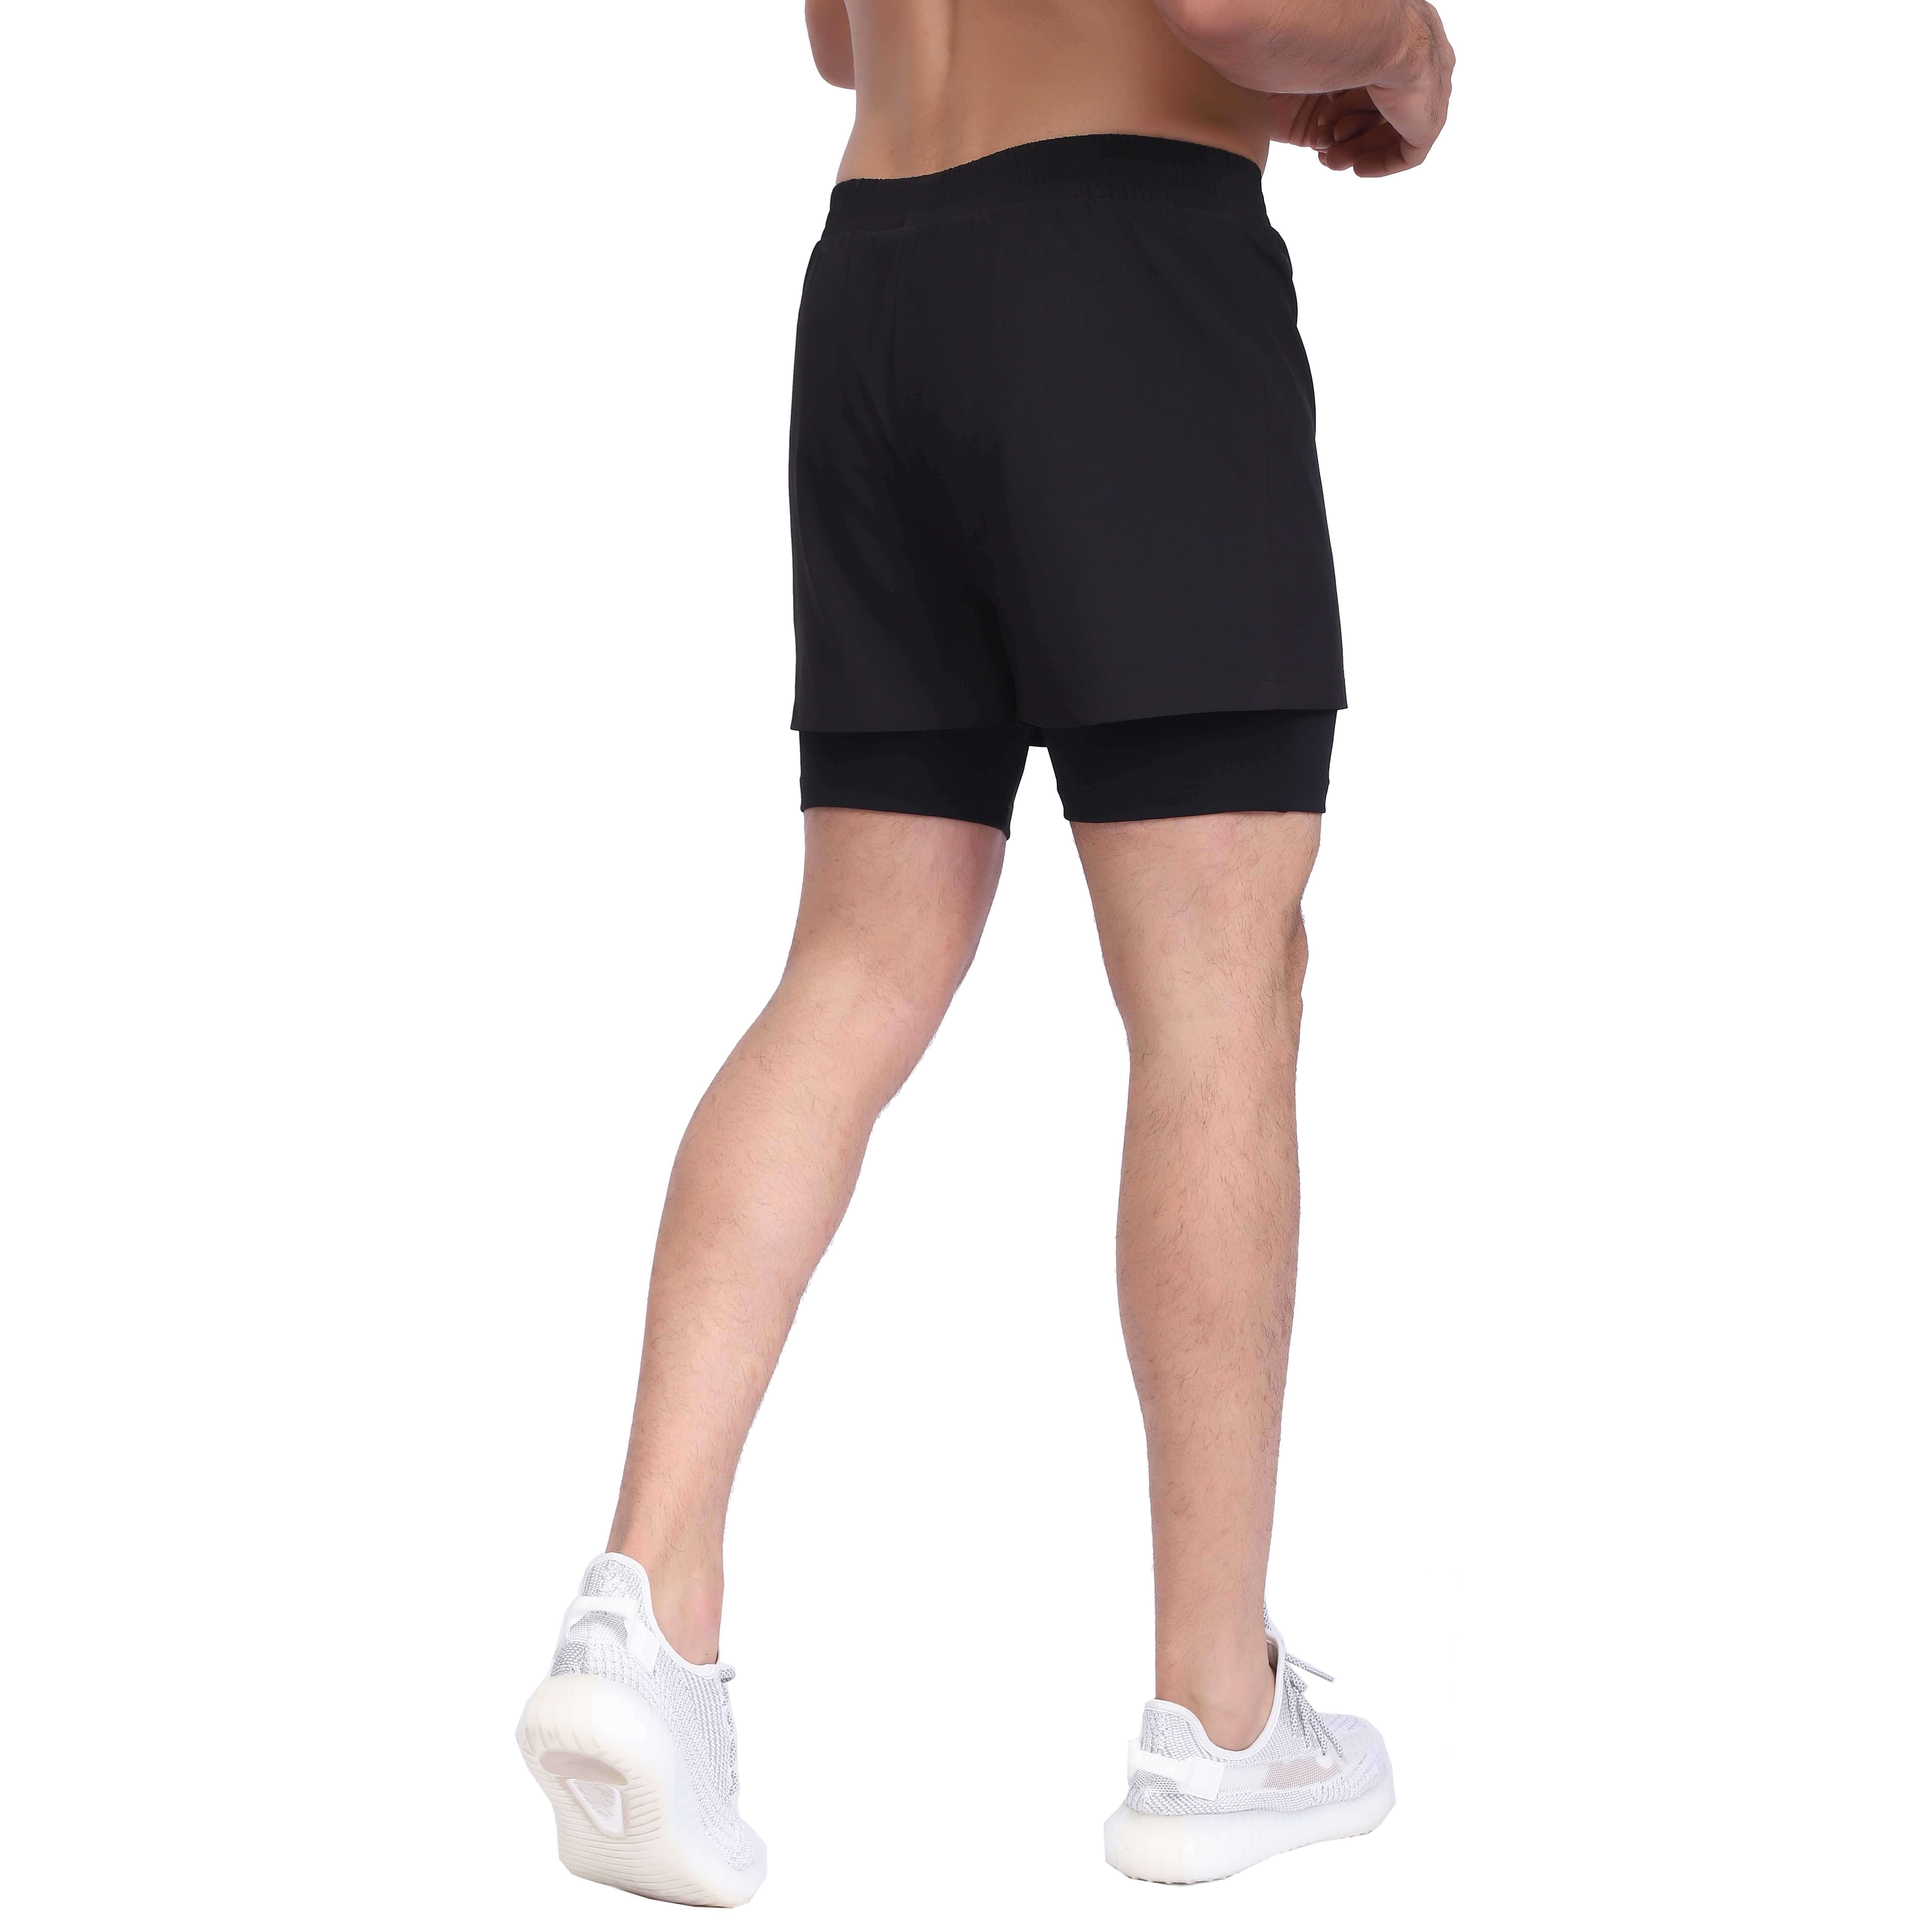 Pantalones cortos deportivos 2 en 1 para hombre, para correr, ligeros, para gimnasio, yoga, entrenamiento